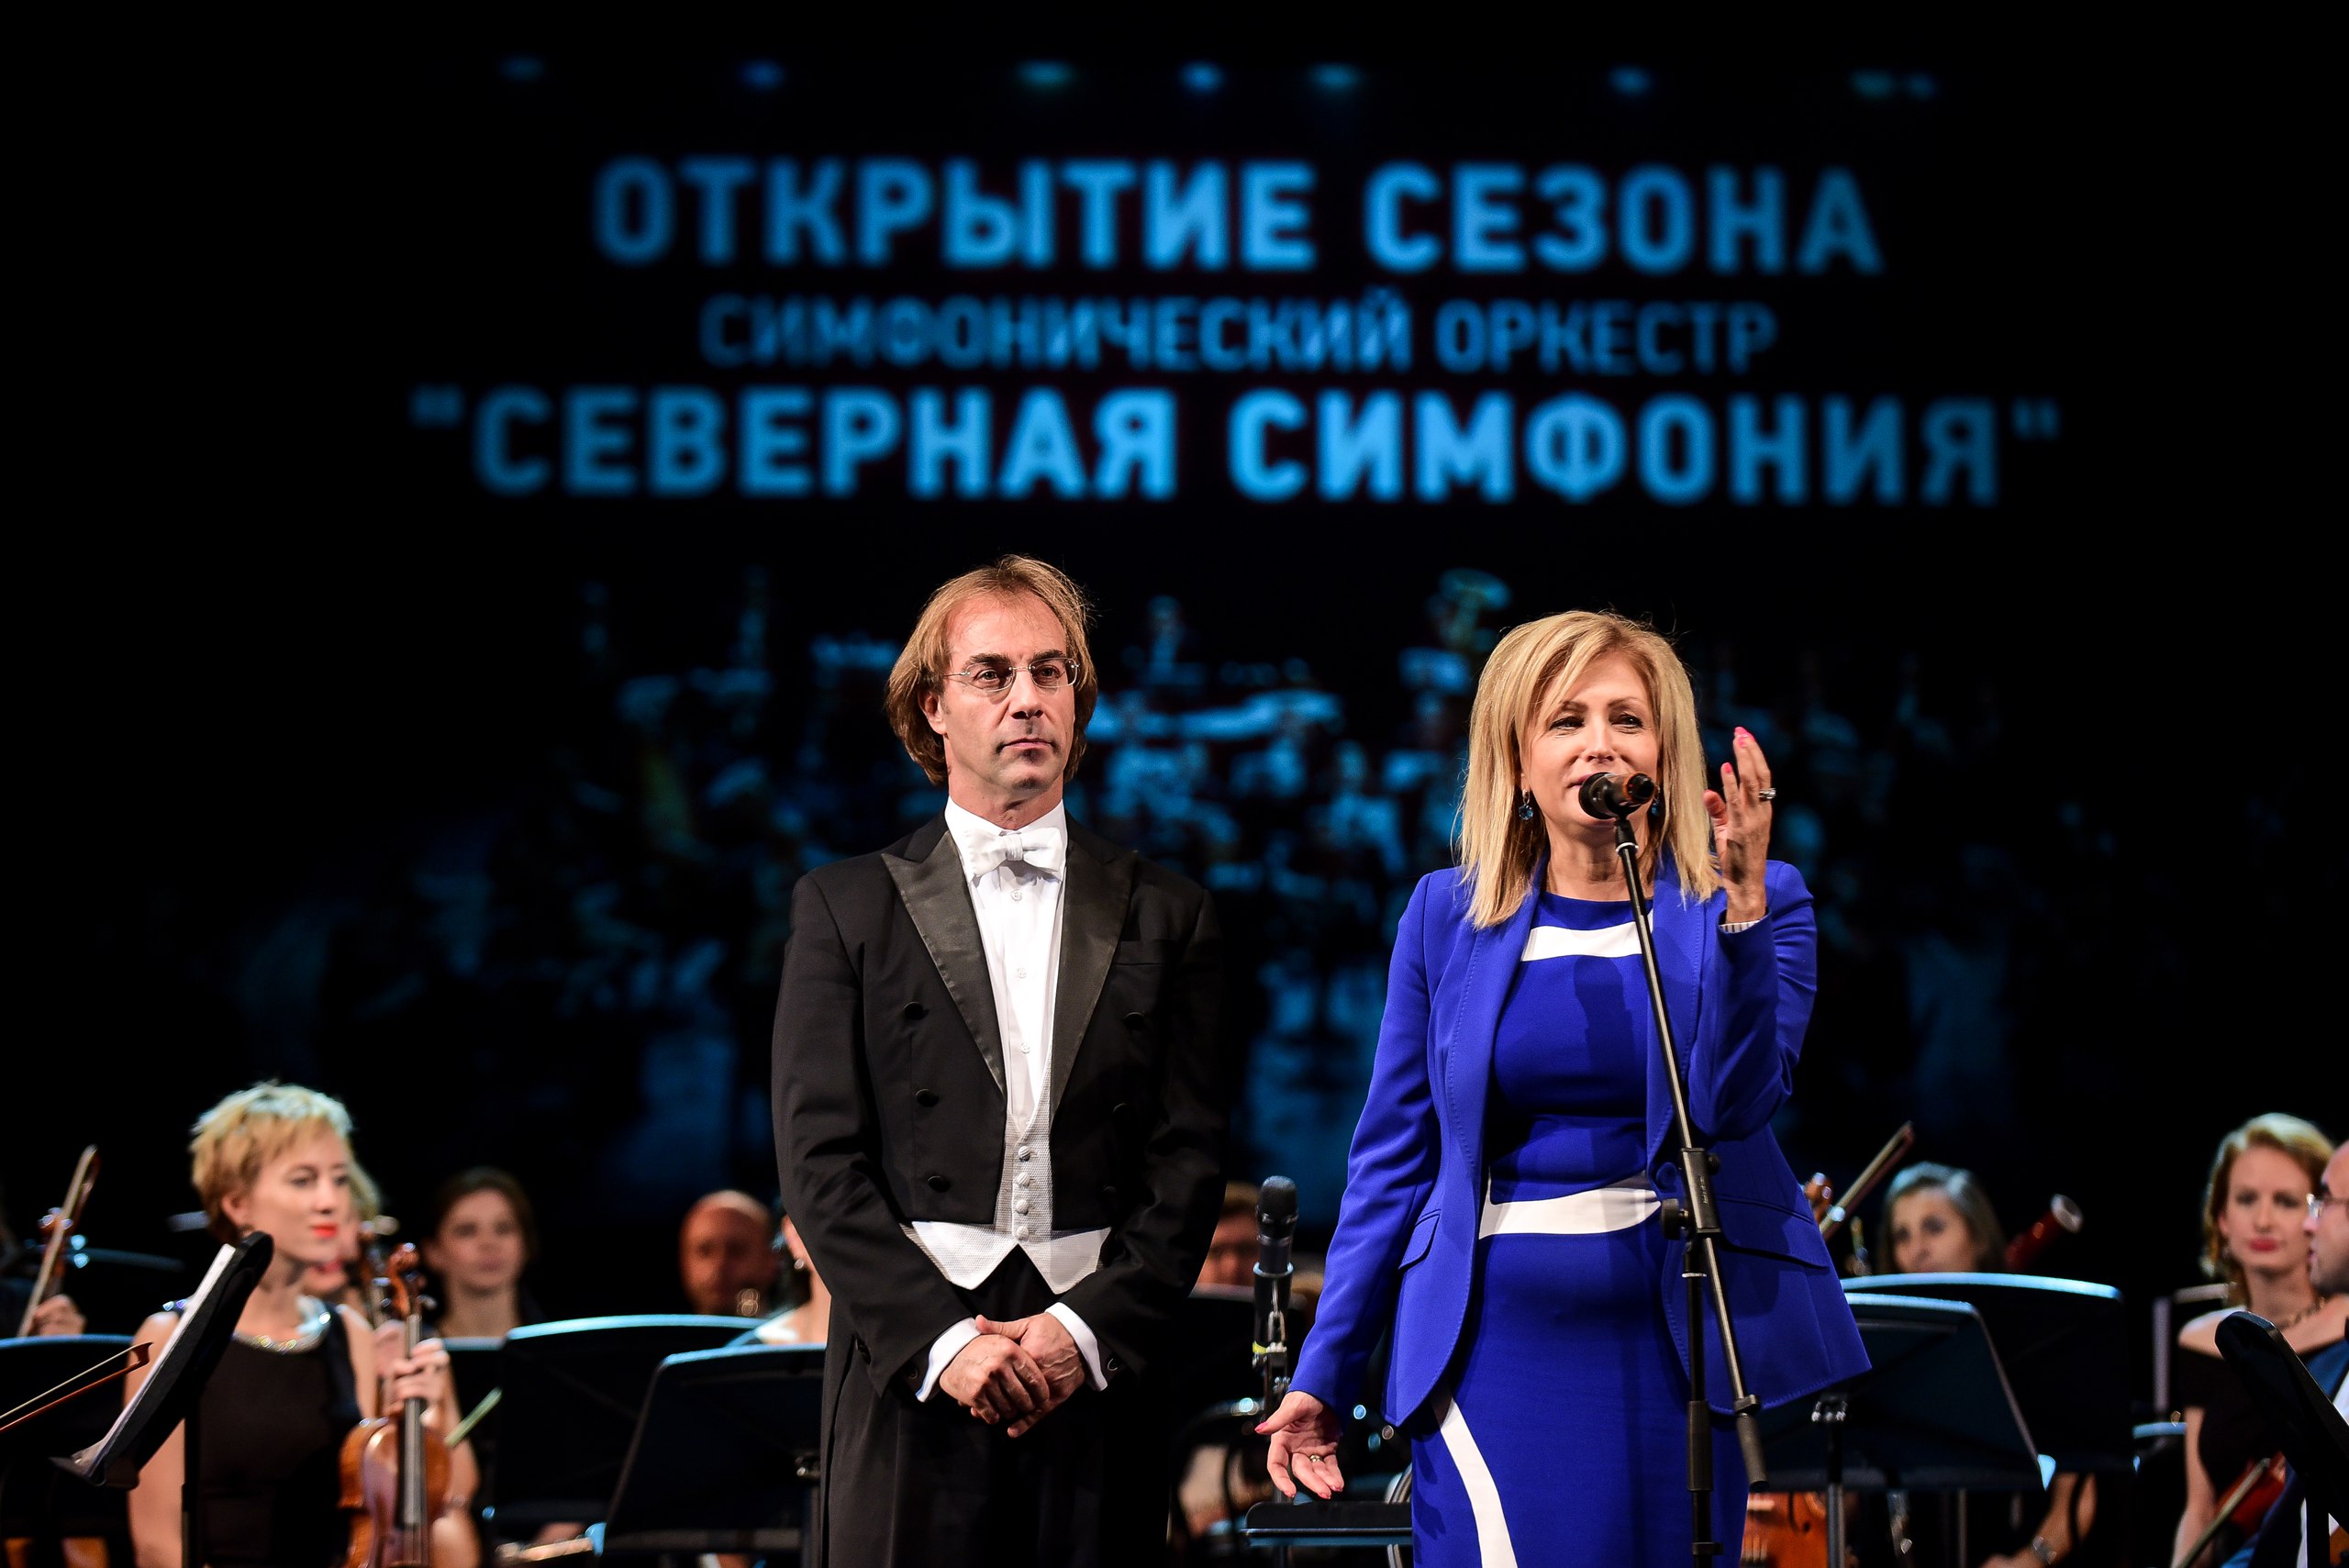 Телеканал "Санкт-Петербург" побывал на открытии сезона оркестра "Северная симфония"